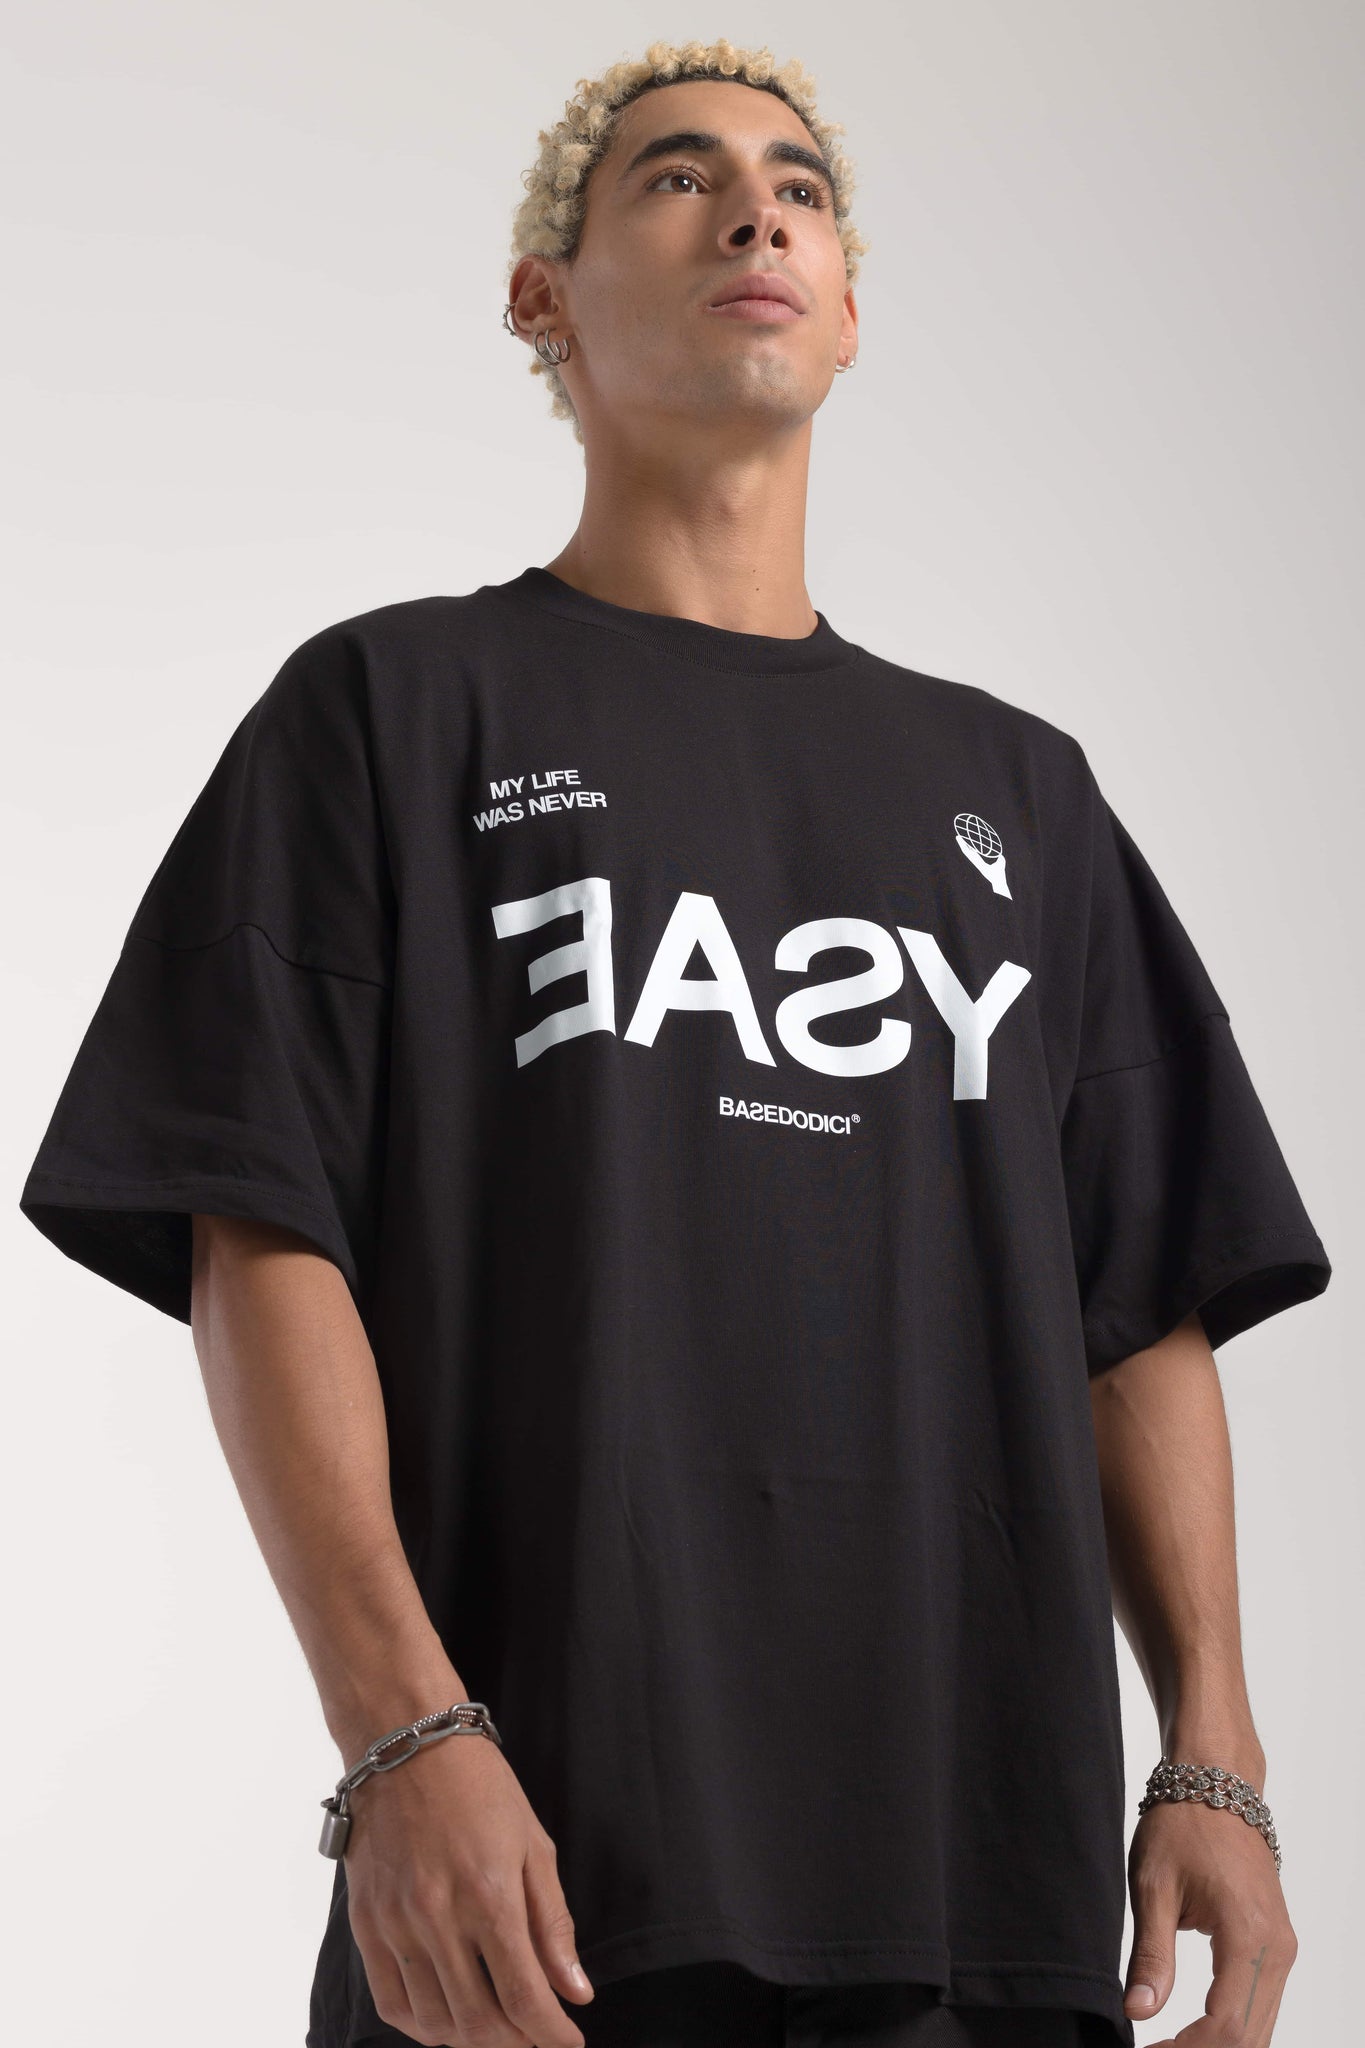 “BADINFLUENCE” Easy Black Over T-Shirt